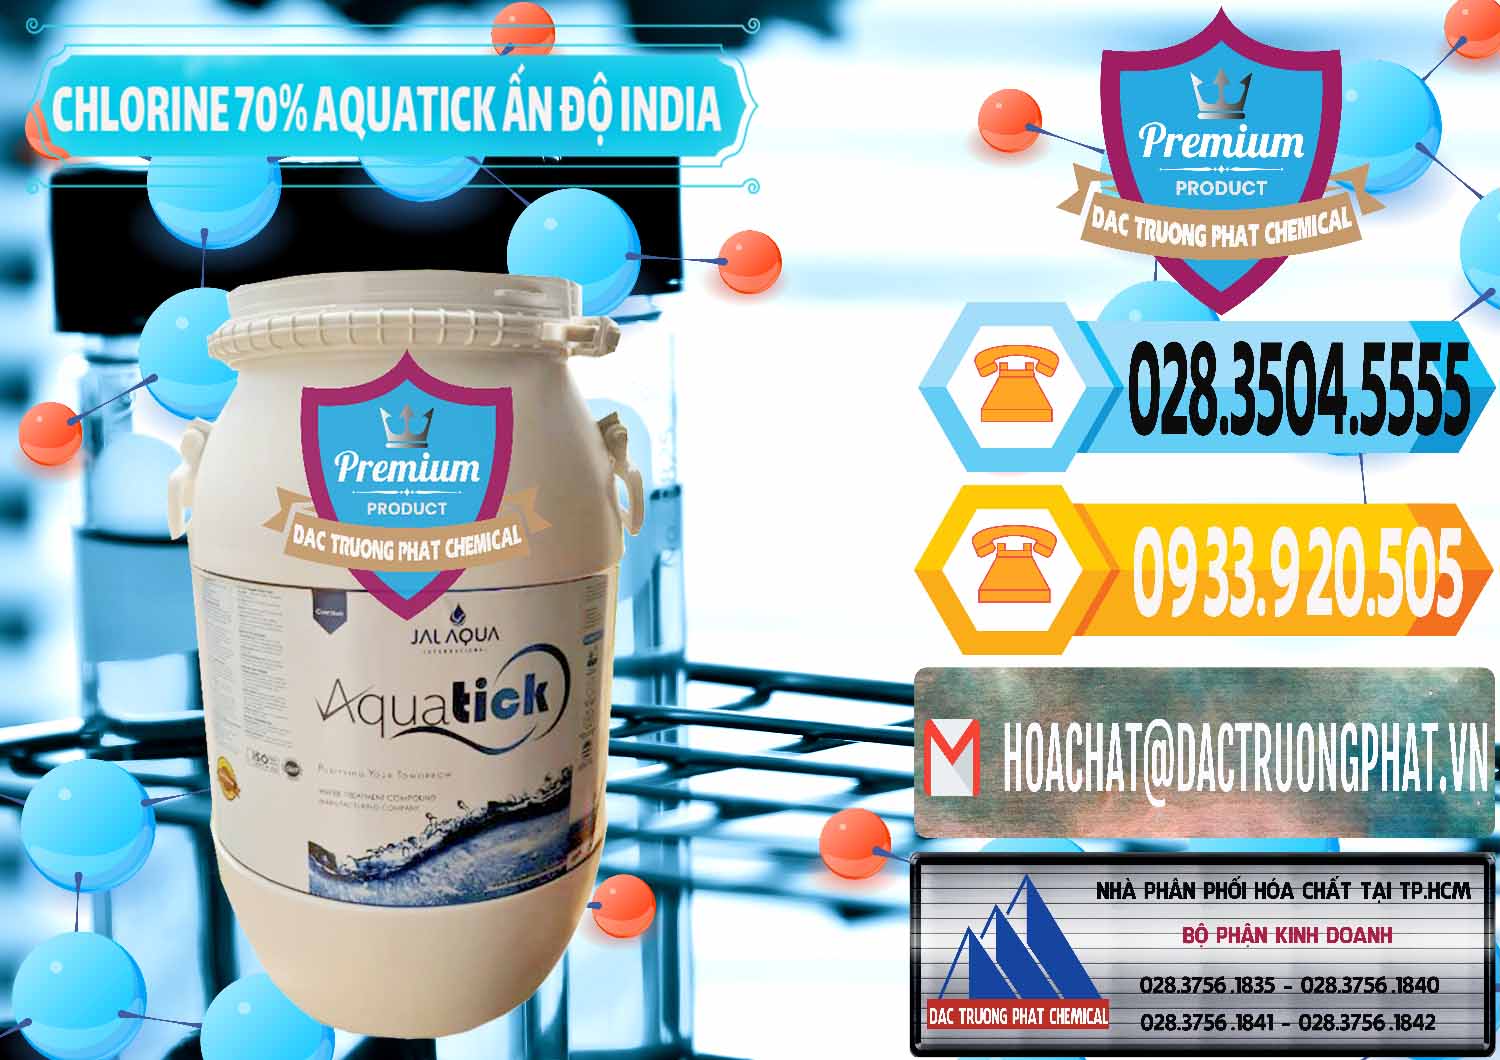 Nơi chuyên bán và cung ứng Chlorine – Clorin 70% Aquatick Jal Aqua Ấn Độ India - 0215 - Chuyên phân phối và cung cấp hóa chất tại TP.HCM - hoachattayrua.net